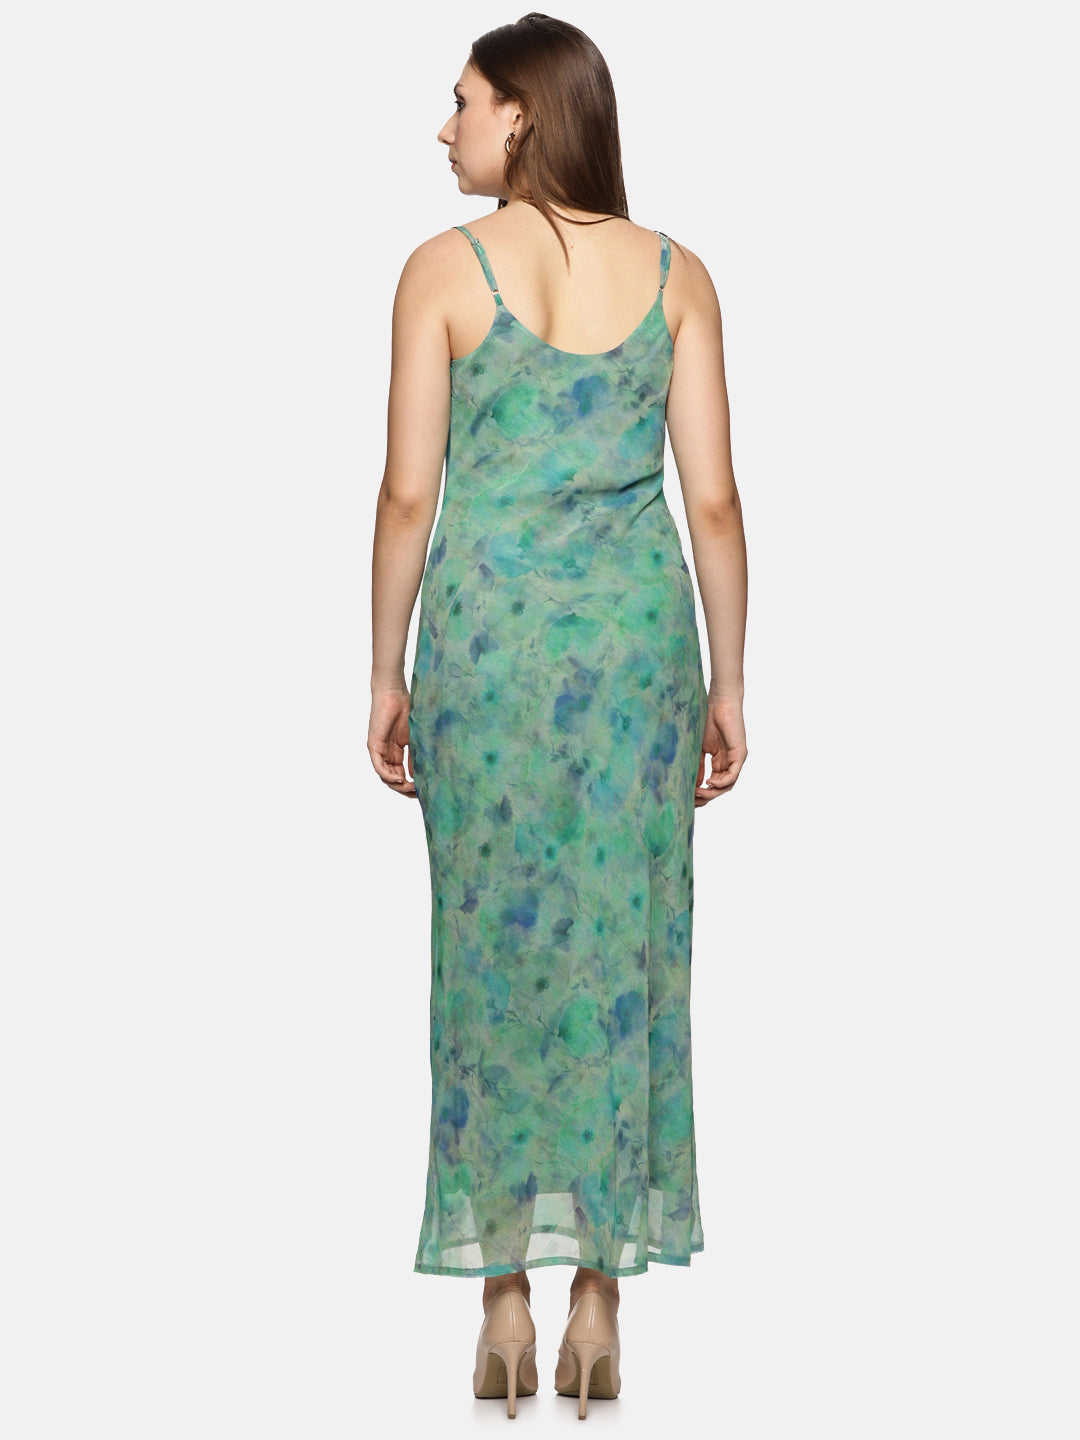 Buy Green Cowl Neck Slip Dress For Women